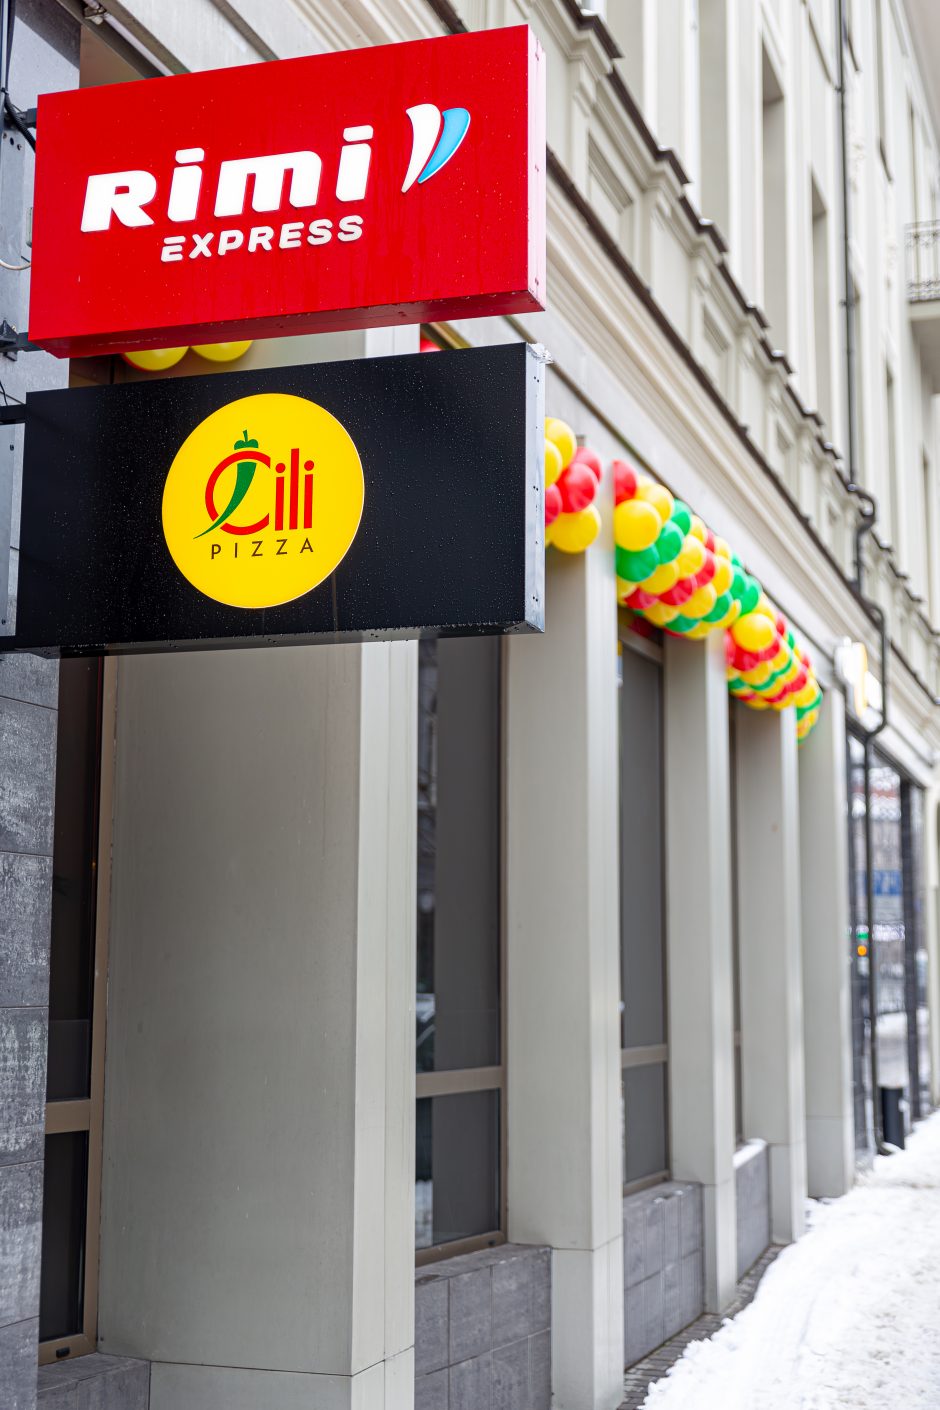 Kauno Laisvės alėjoje – naujas modernus „Čili pizza“ restoranas